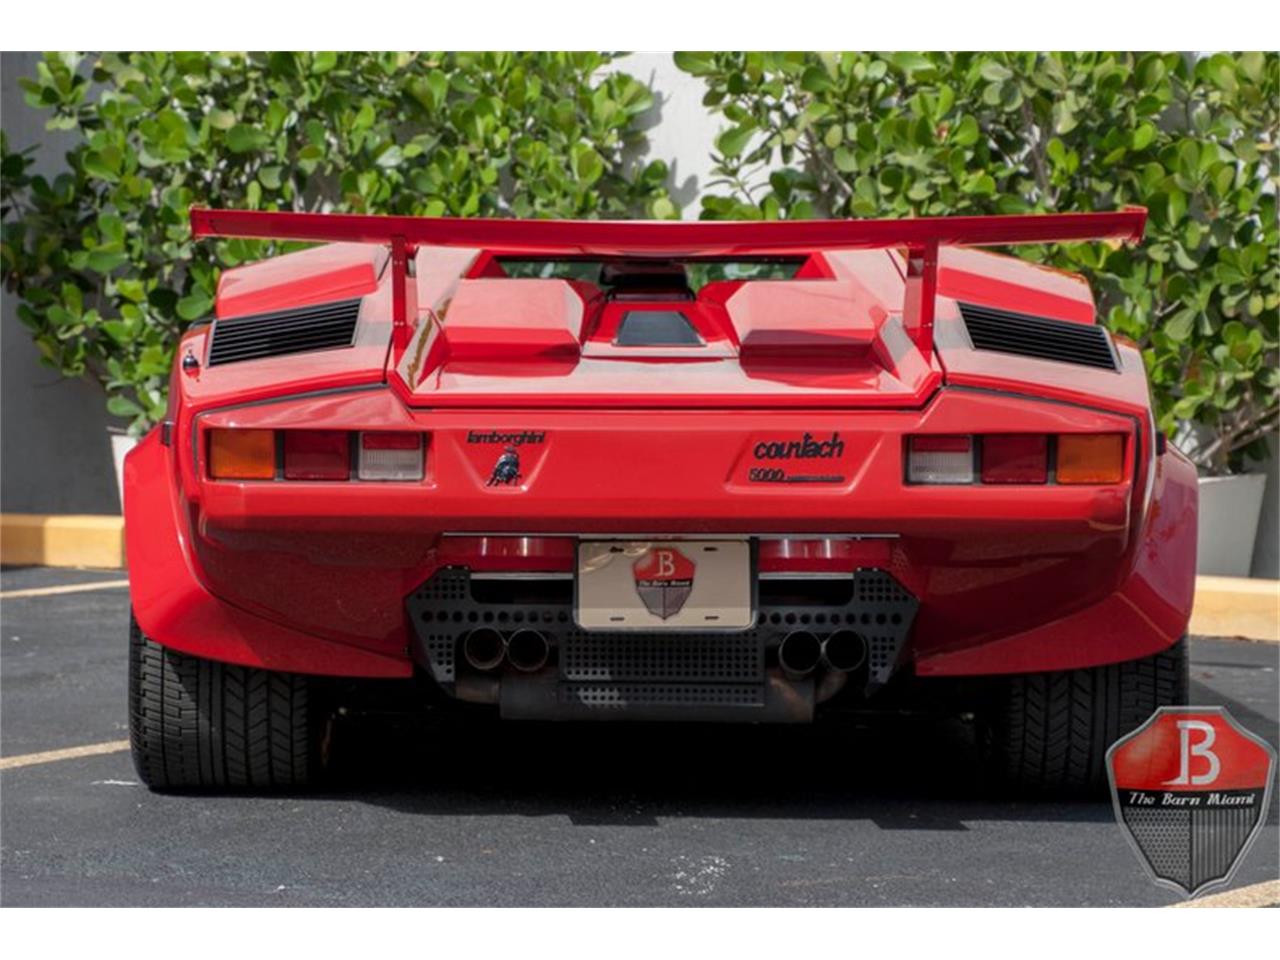 1988 Lamborghini Countach for sale in Miami, FL ...